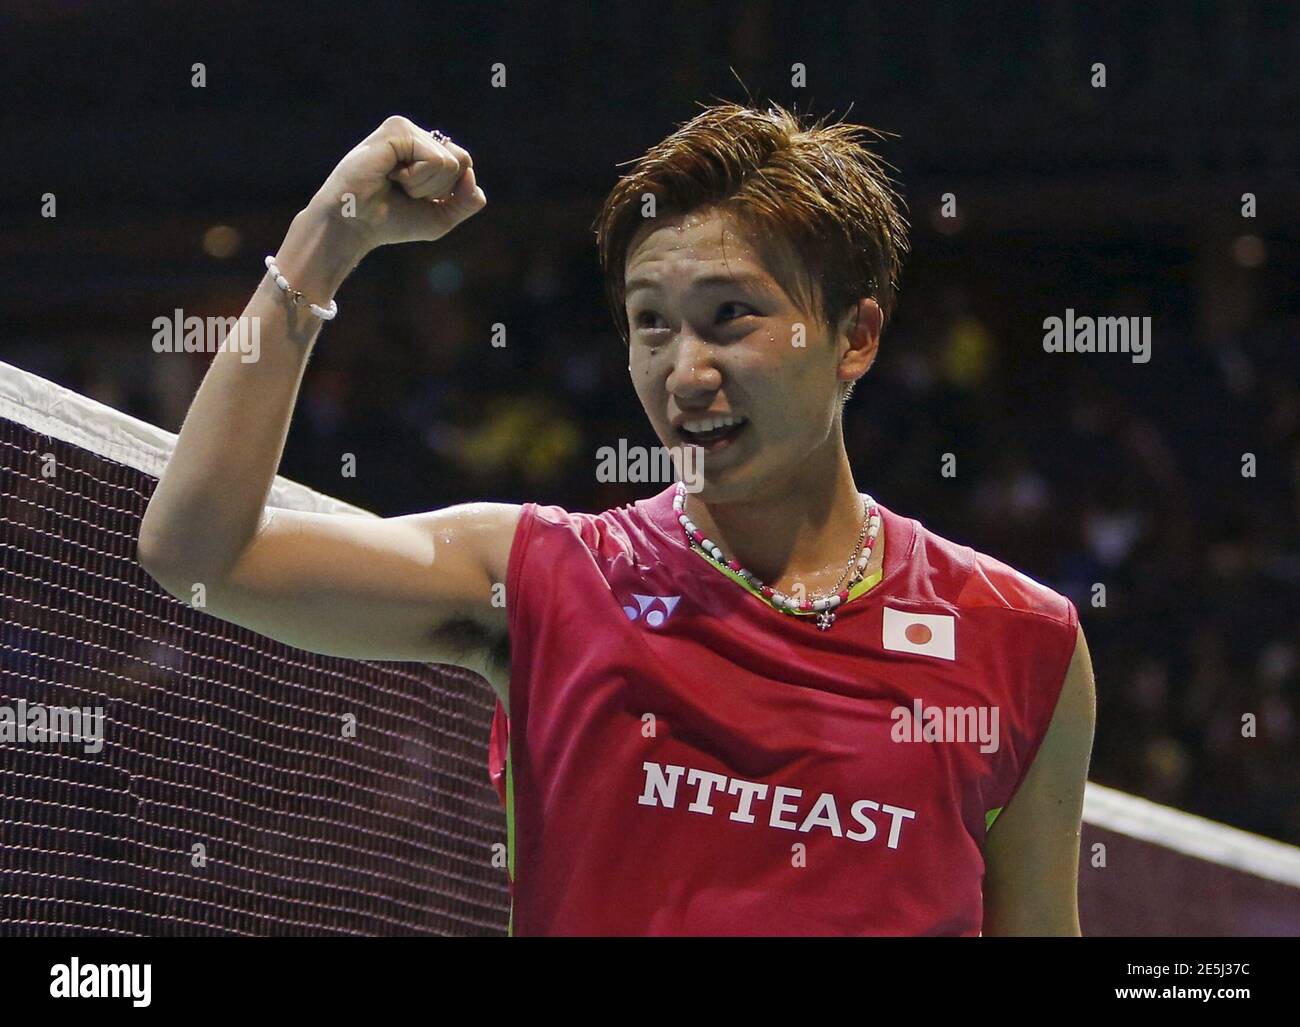 Kento Momota of Japan celebrates after defeating Hu Yun of Hong Kong during their men's singles final badminton match at the Singapore Open April 12, 2015. REUTERS/Edgar Su Stock Photo